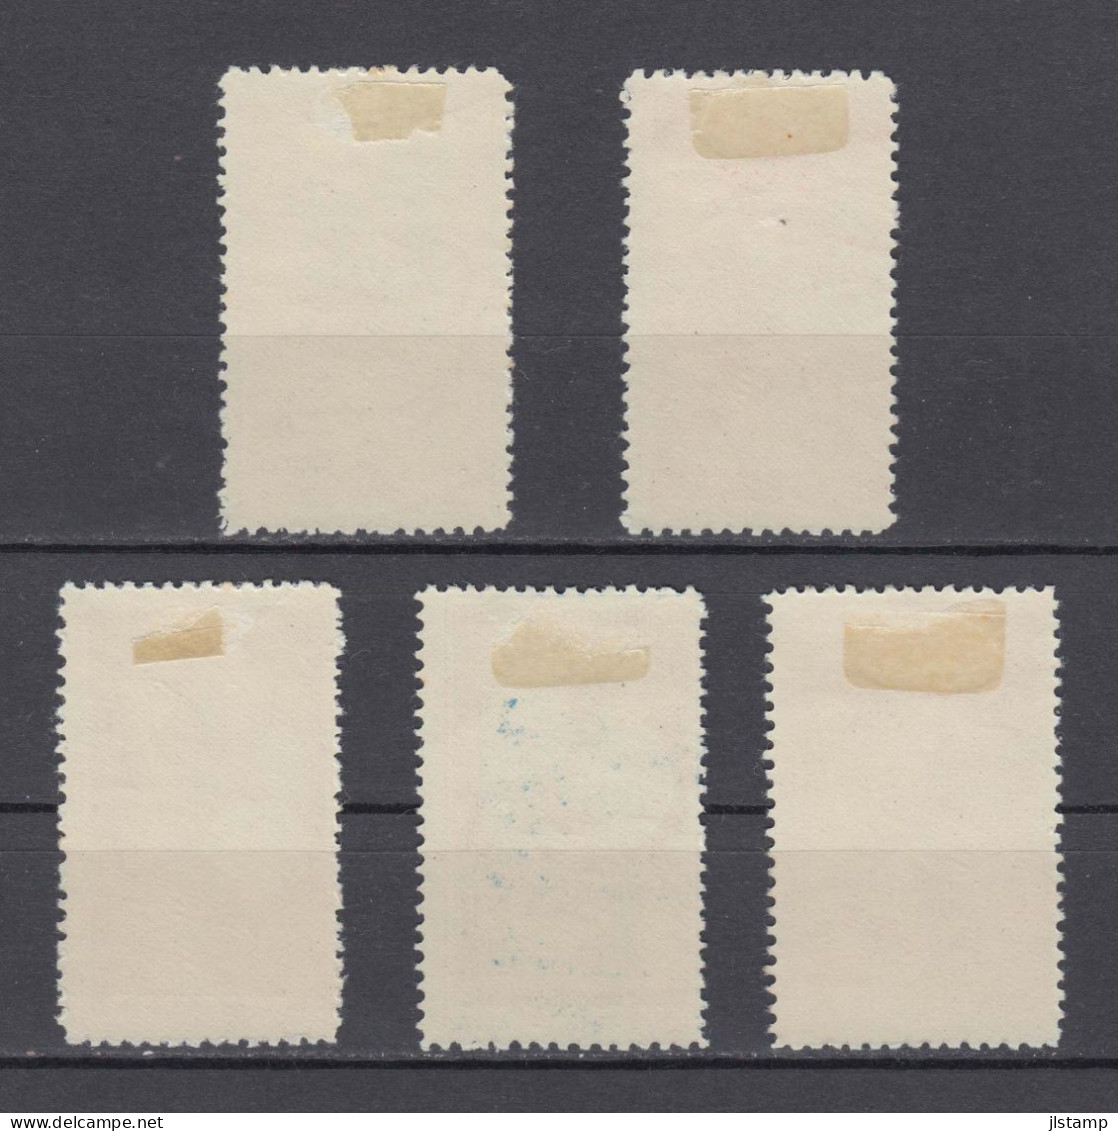 Turkey 1950 Izmir International Fair Stamp Set,Scott# 1008/1012,OG MH,VF - Unused Stamps